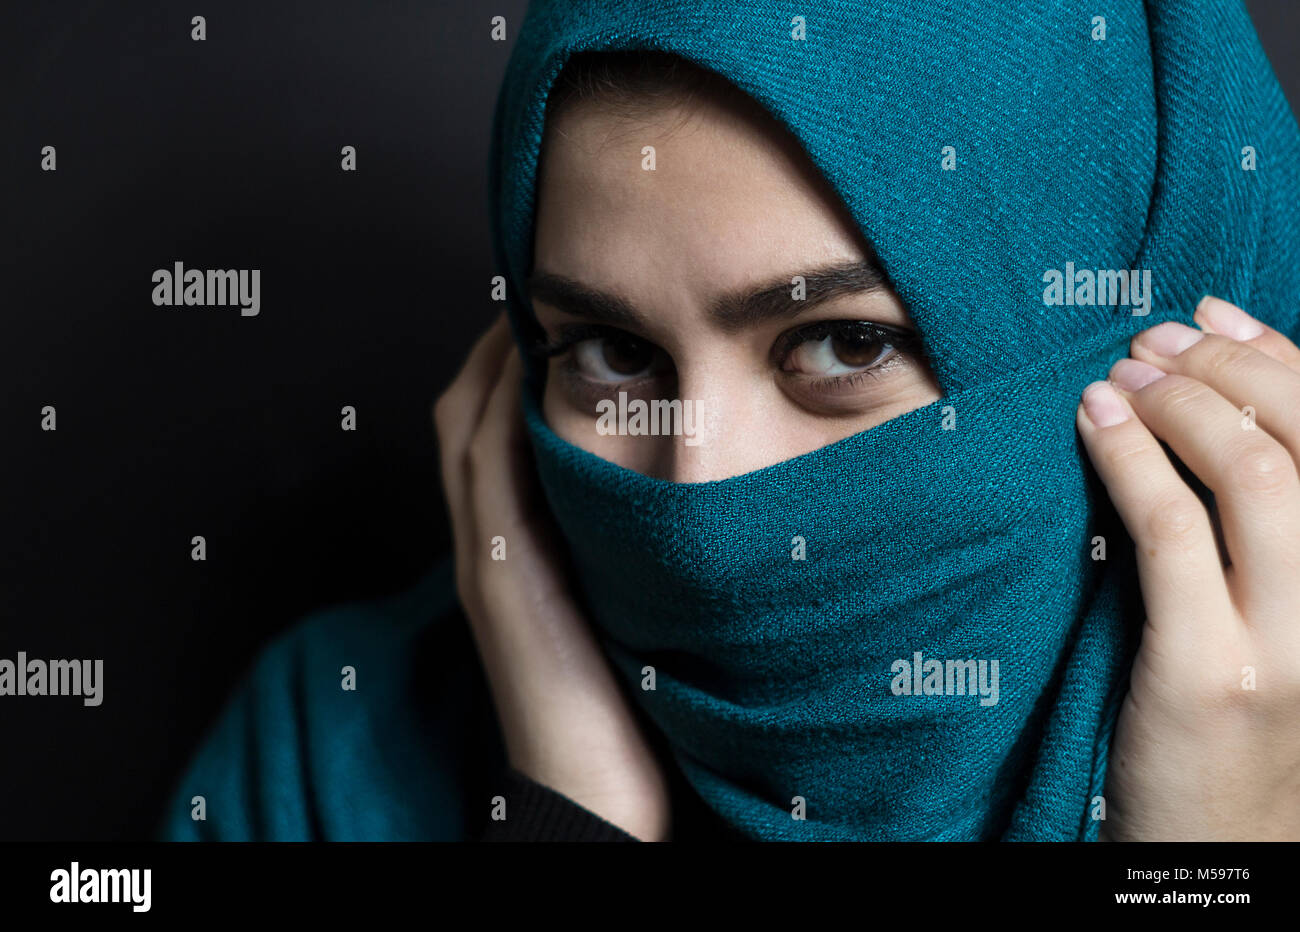 Musulmani bella ragazza in hijab. Ritratto di un giovane arabo donna su uno sfondo nero. Foto Stock